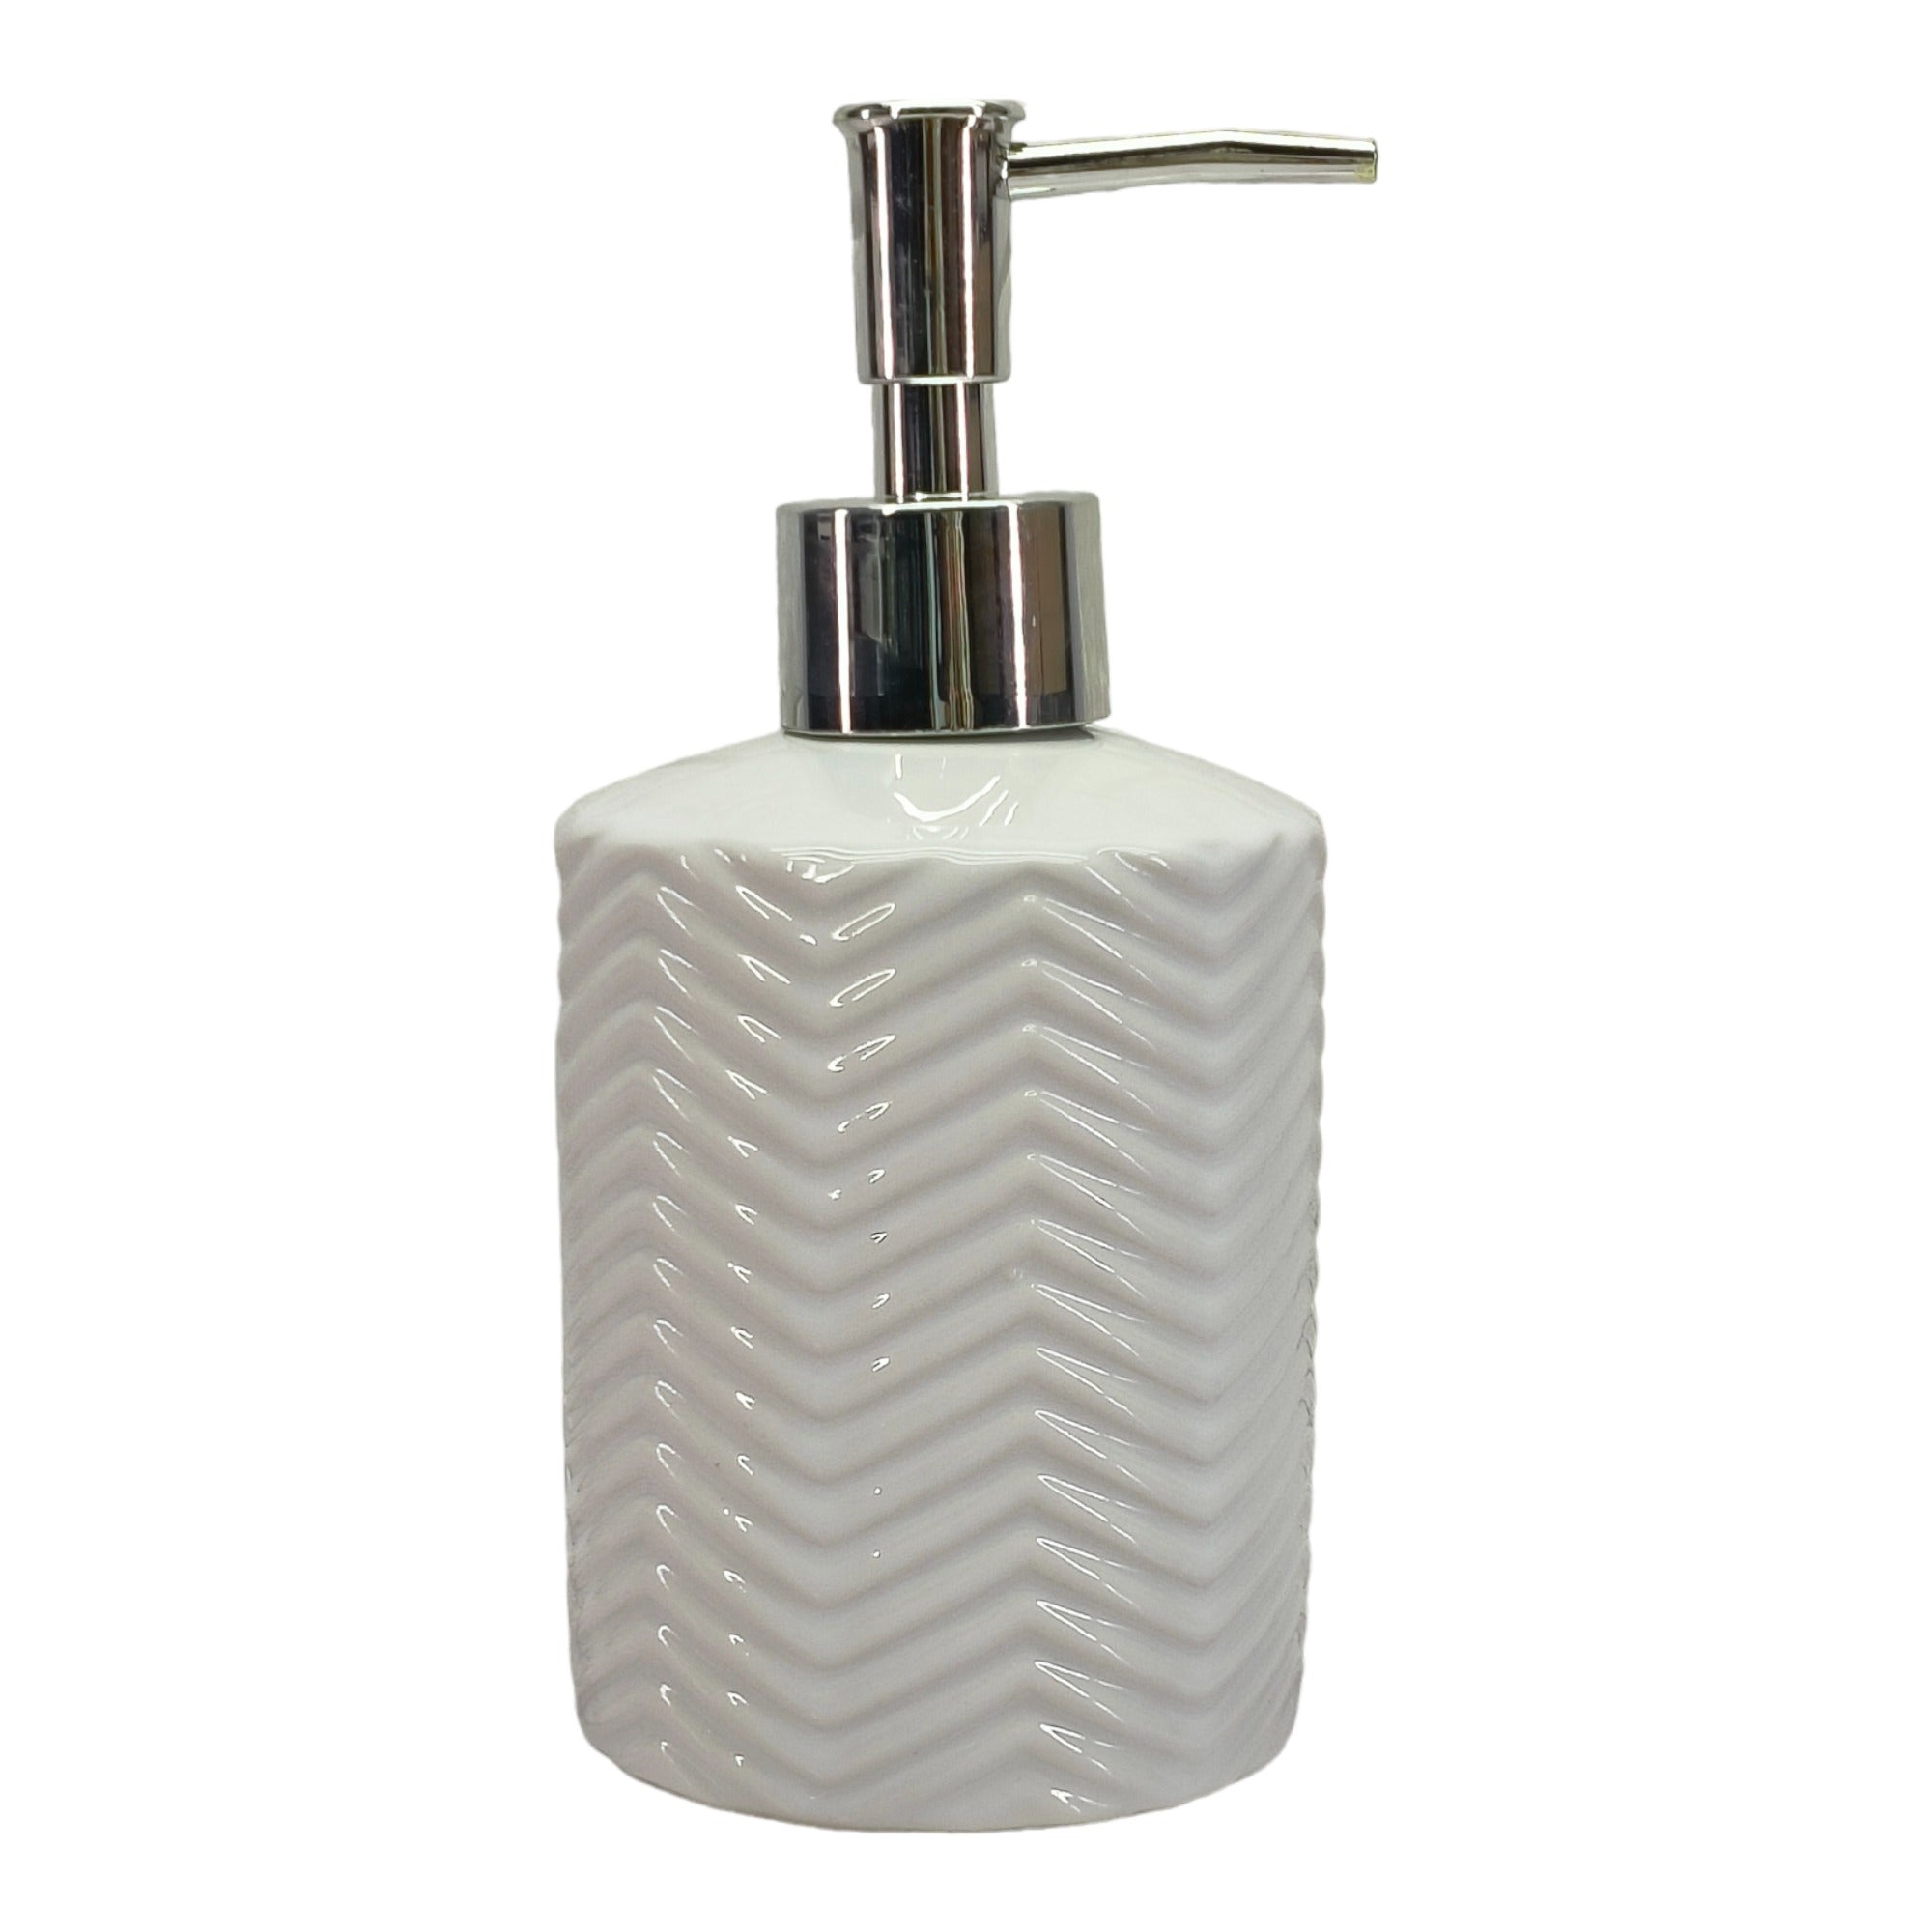 Ceramic Soap Dispenser Set of 1 Bathroom Accessories for Home (C1035)